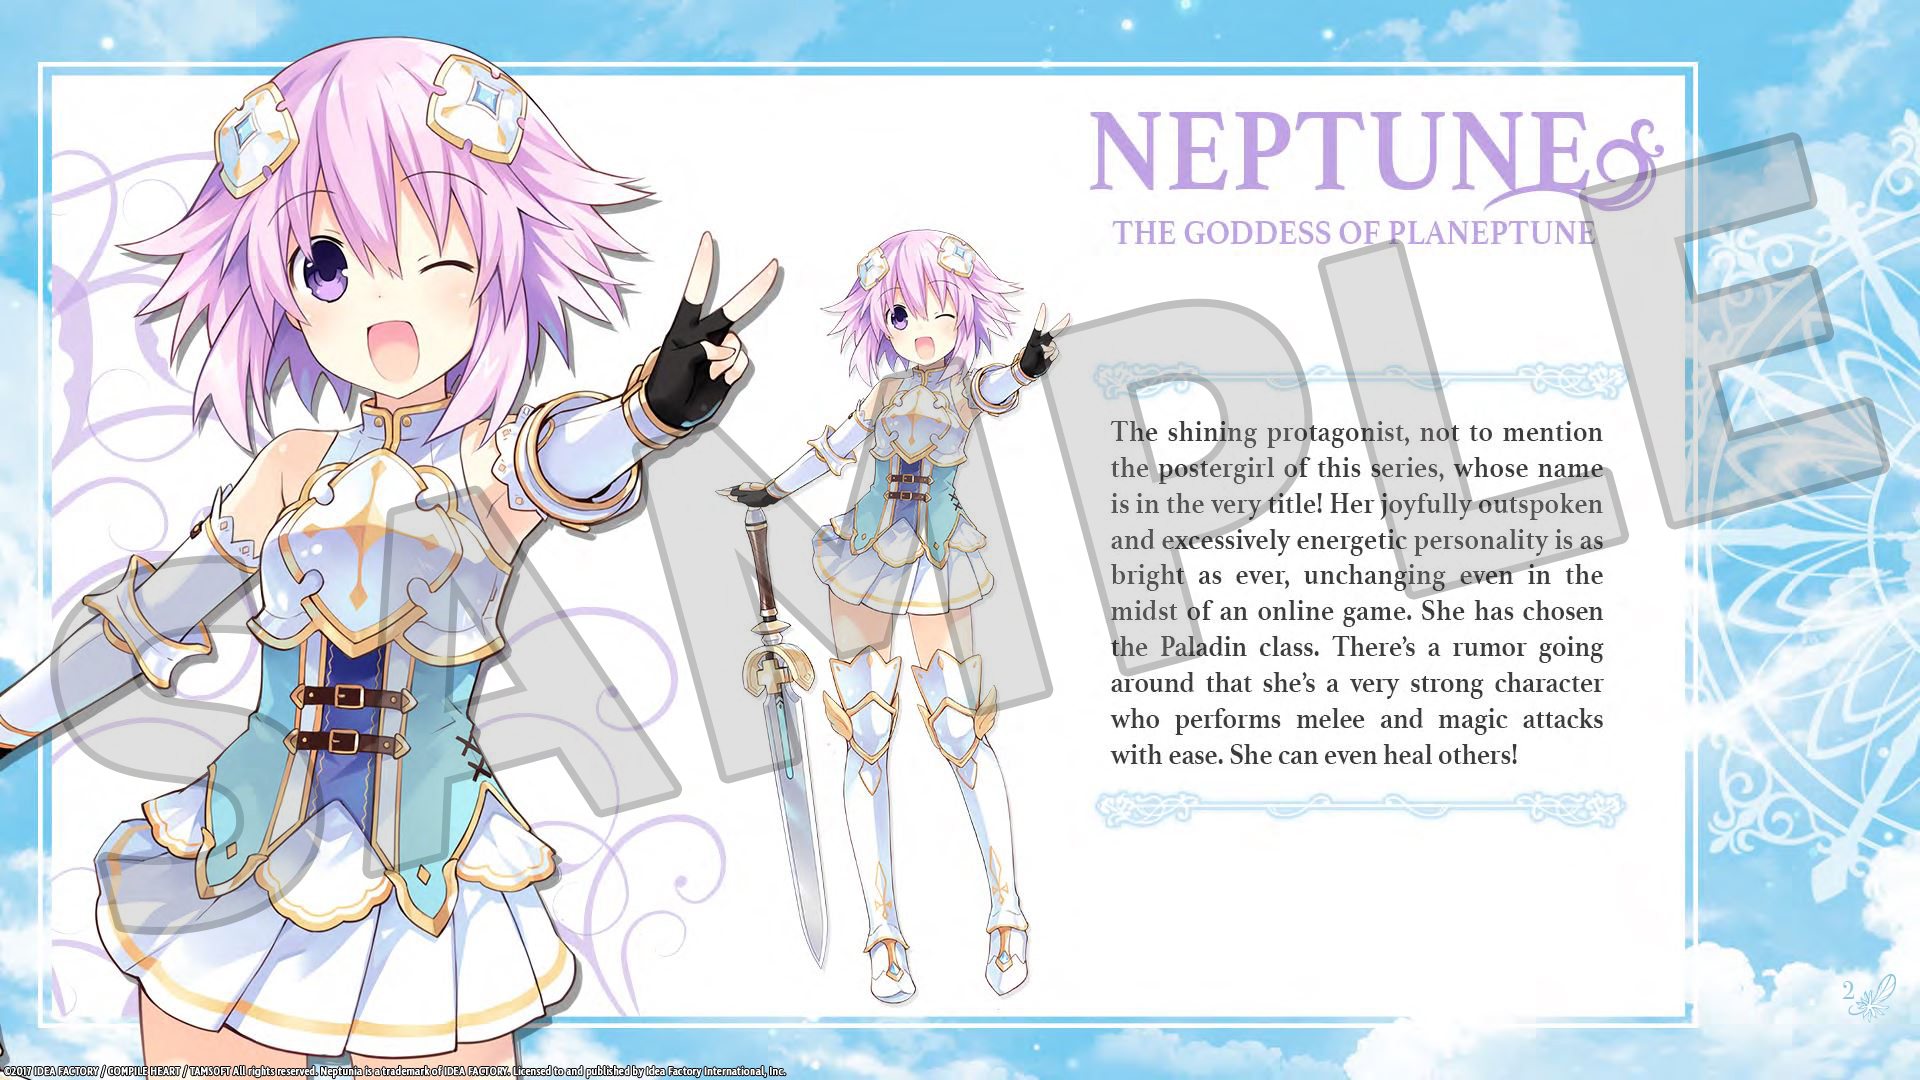 Cyberdimension Neptunia: 4 Goddesses Online - Deluxe Pack DLC Steam CD Key [USD 1.69]